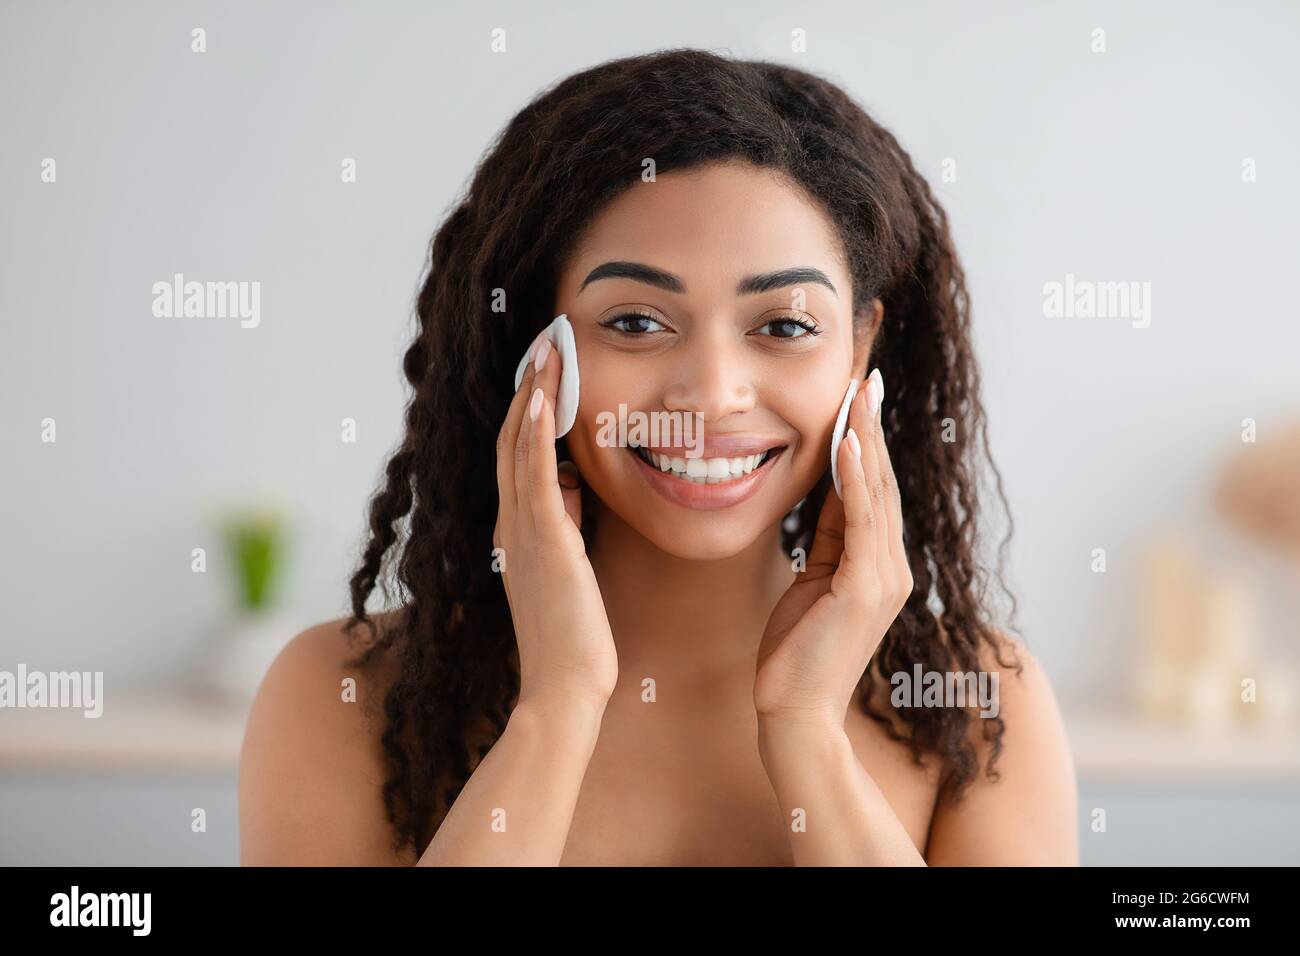 Reinigung Gesicht von Make-up, Problem Hautpflege und tägliche Eingriffe zu Hause Stockfoto